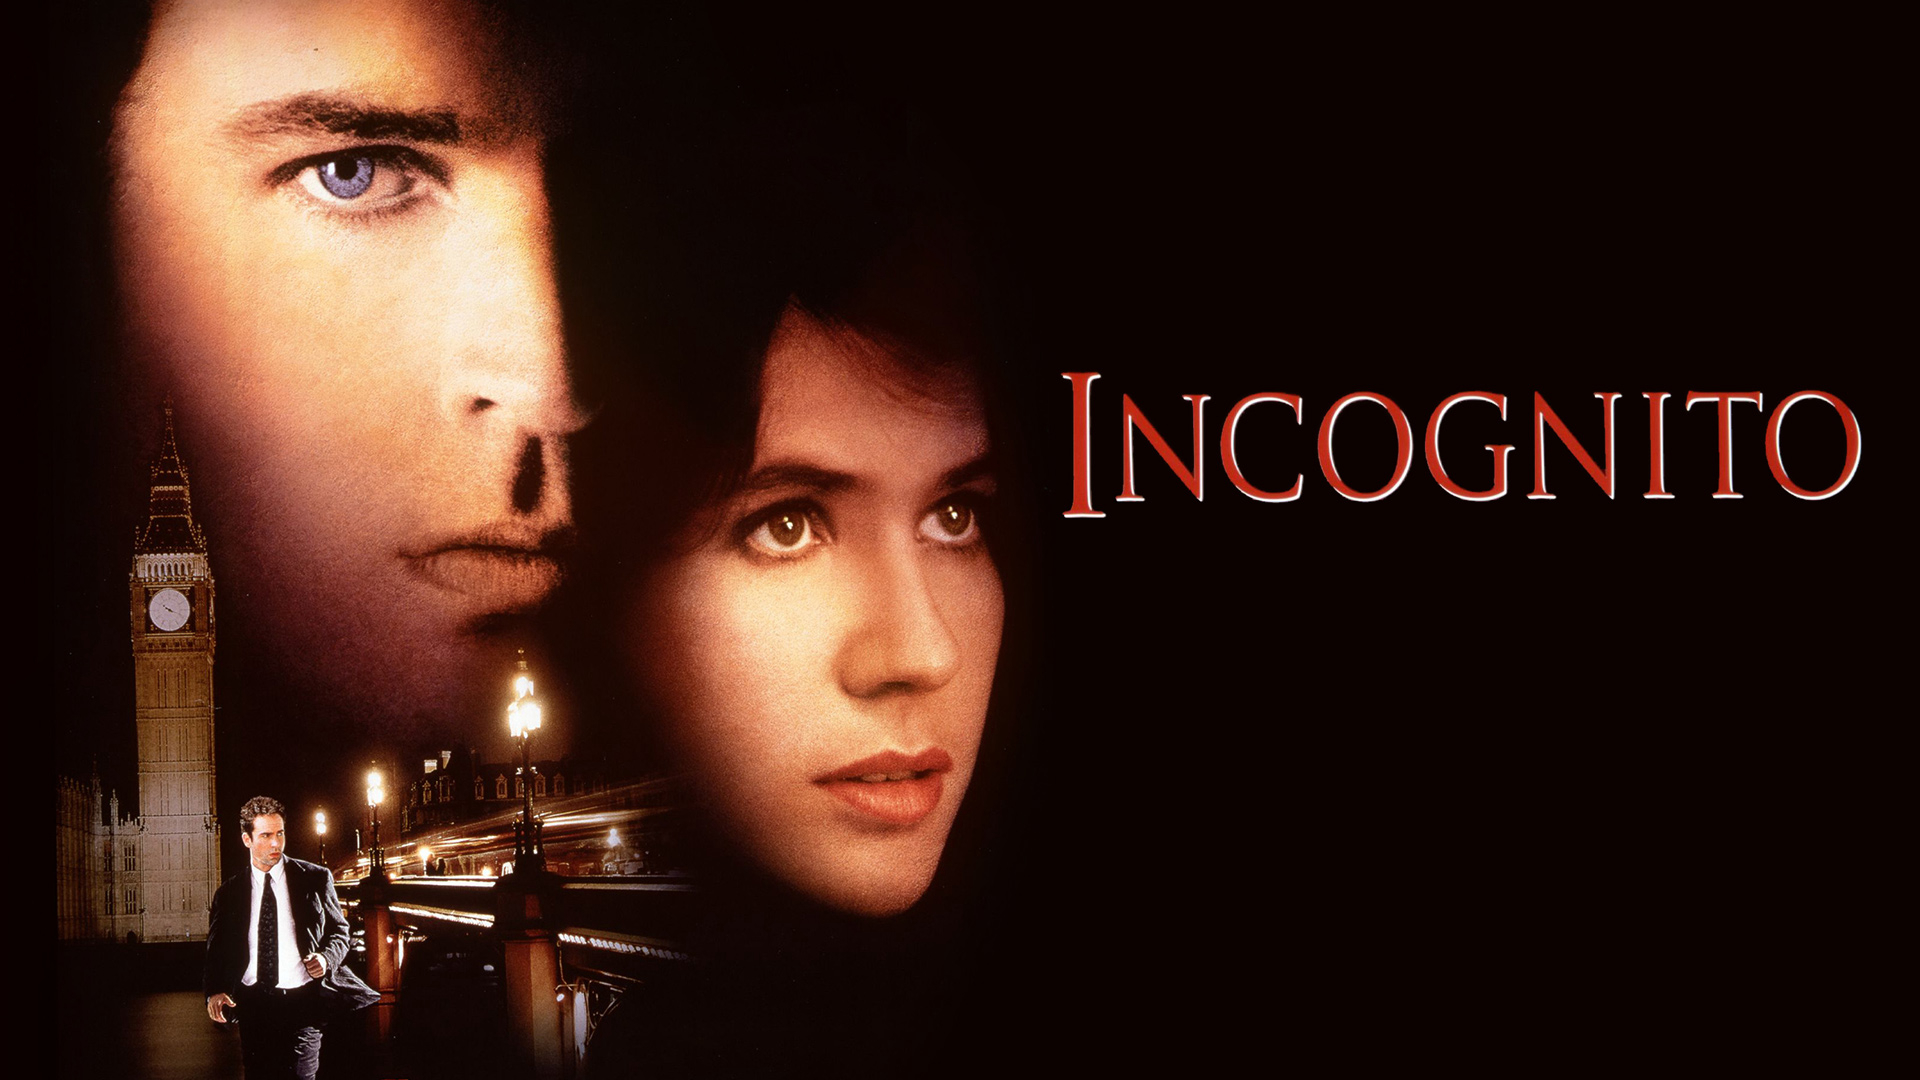 Incognito / Incognito (1997)